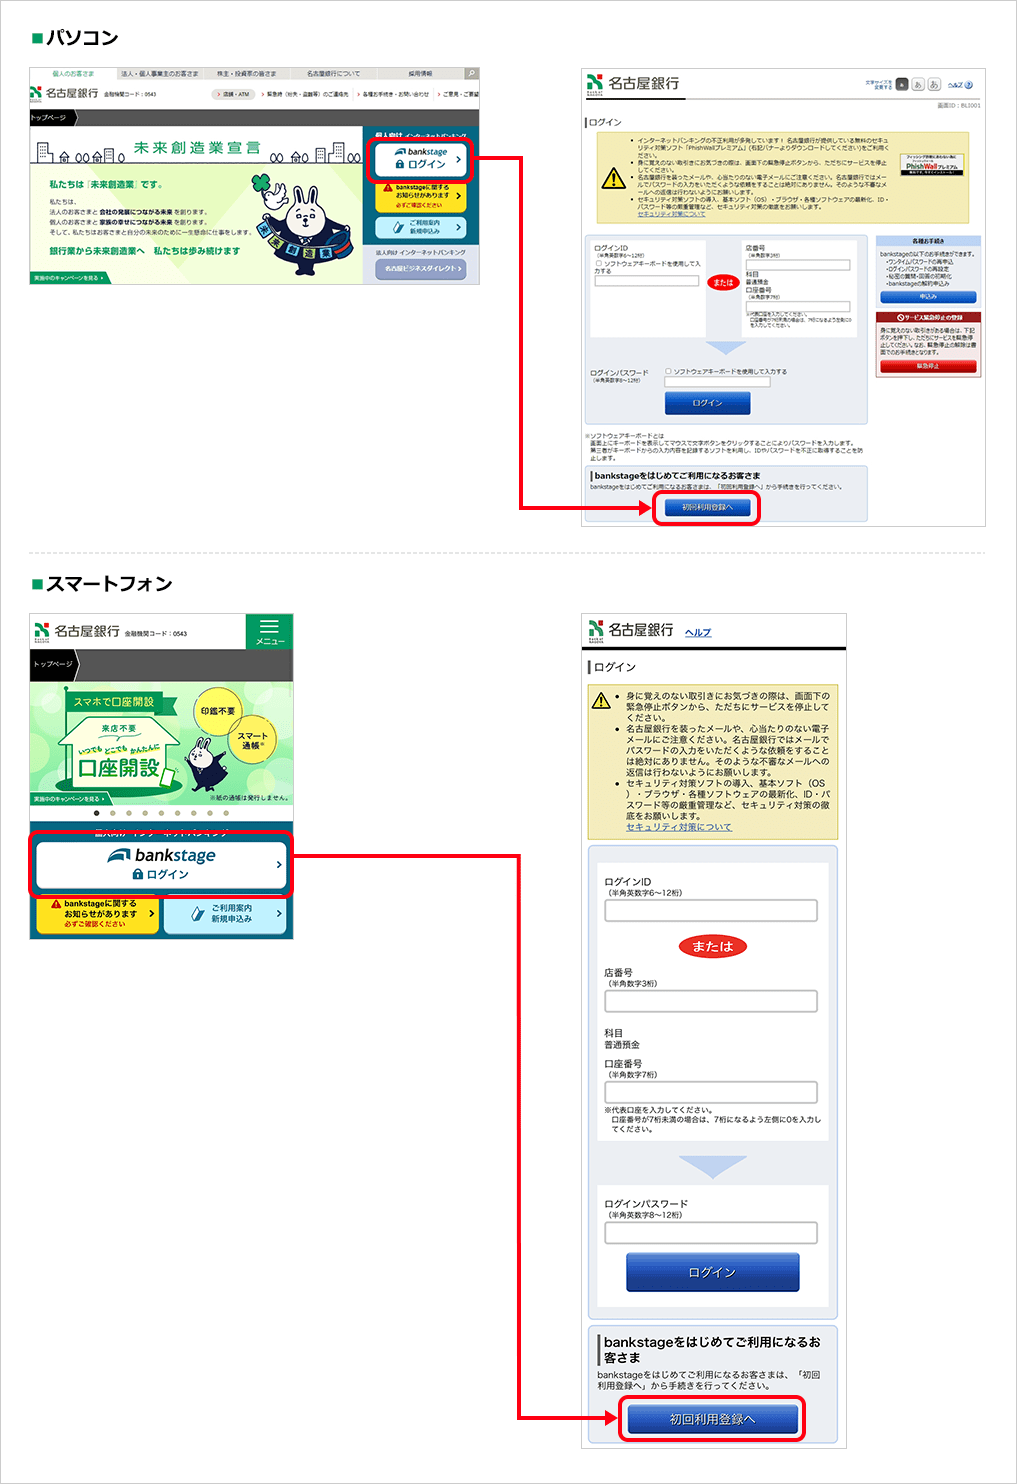 名古屋銀行トップページの「ログイン」をクリックし、「初回利用登録へ」をクリックしてください。